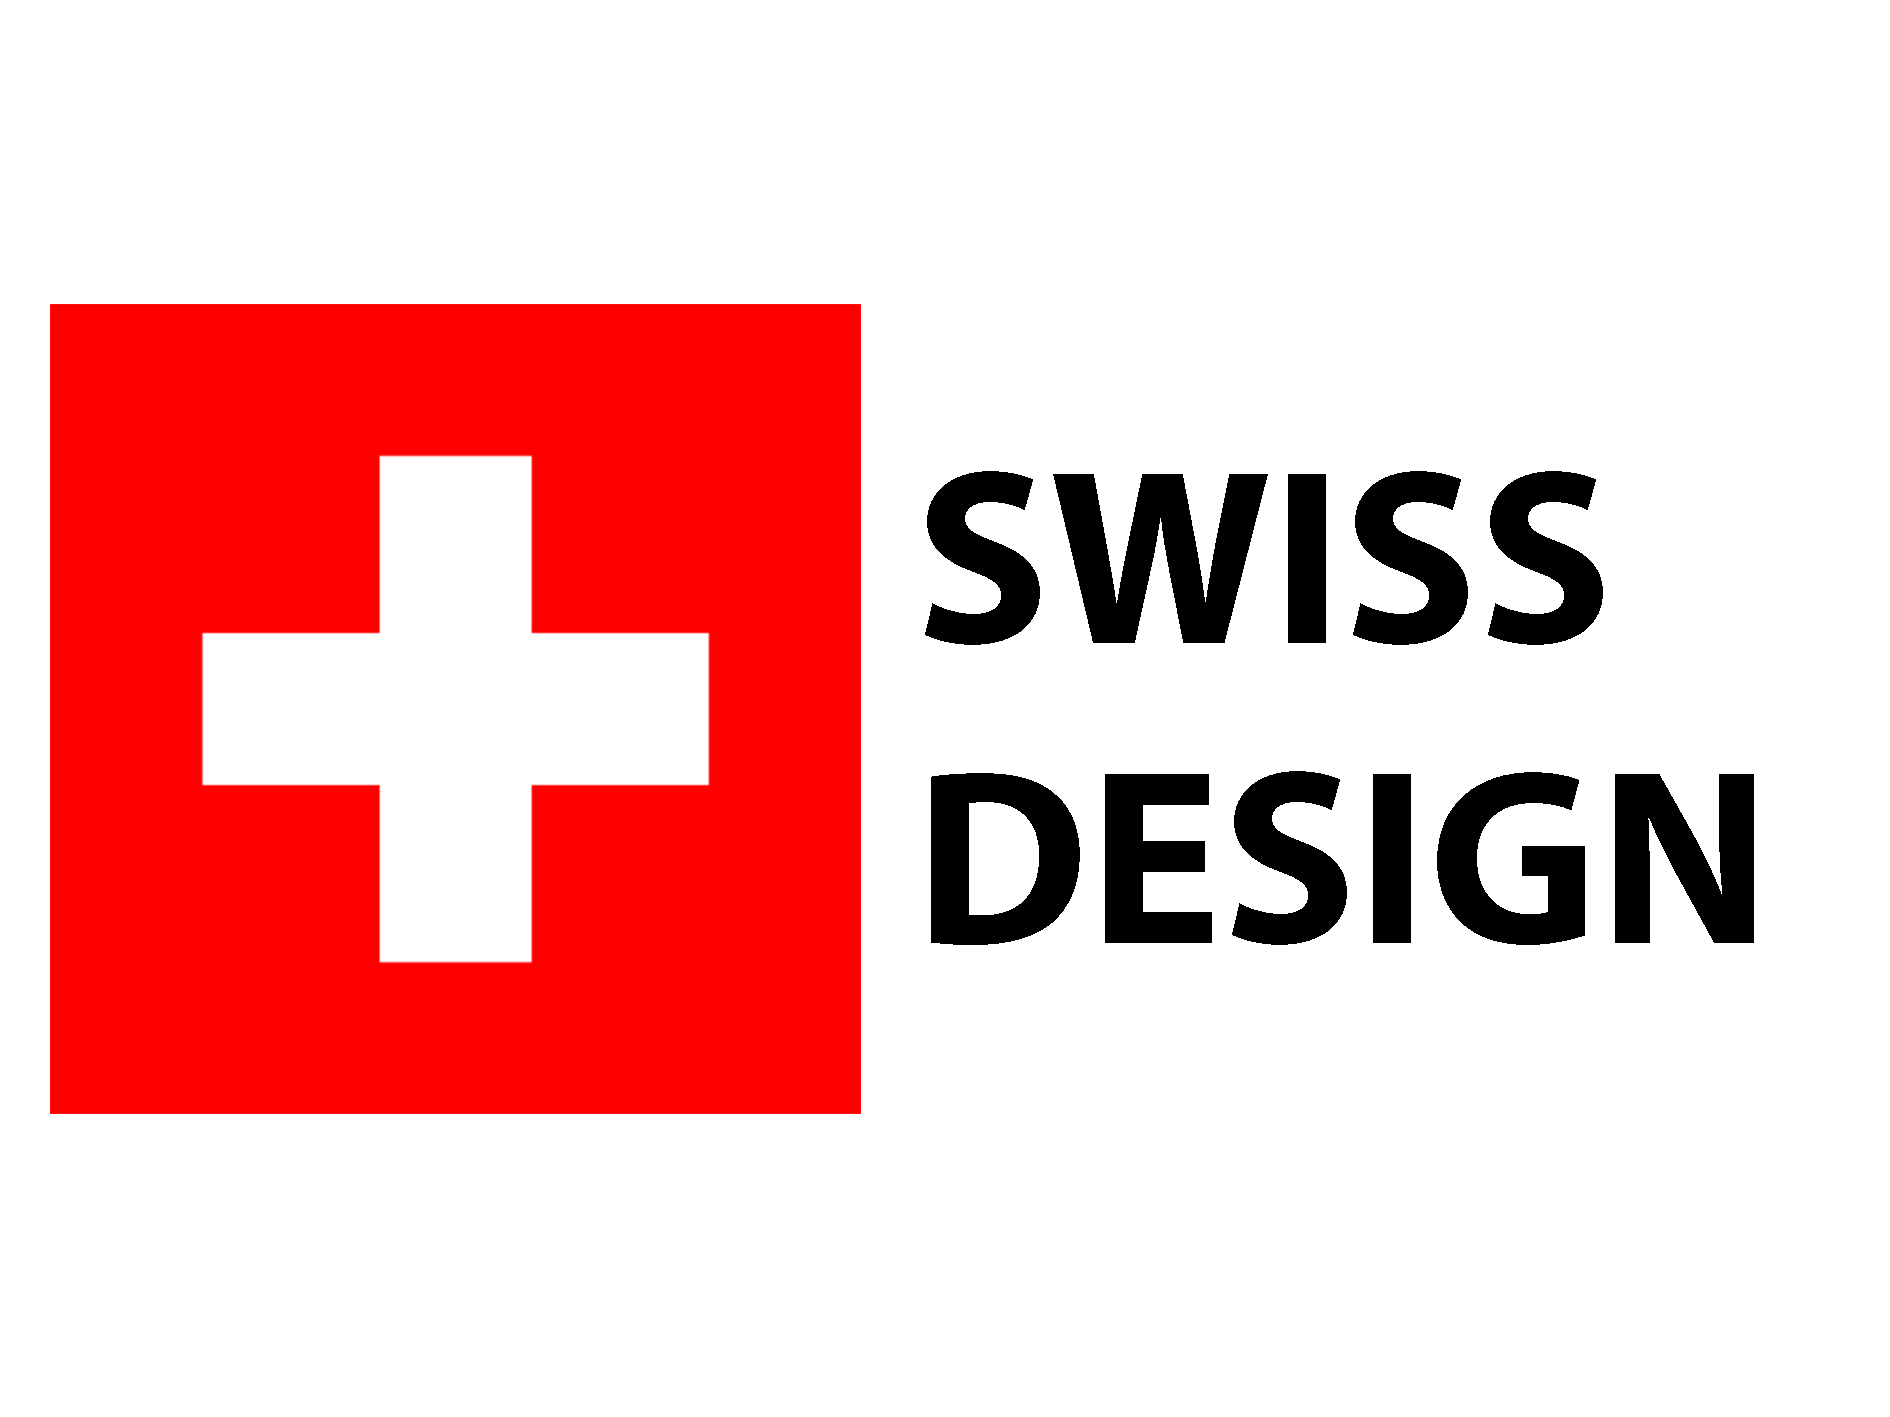 Swiss quality